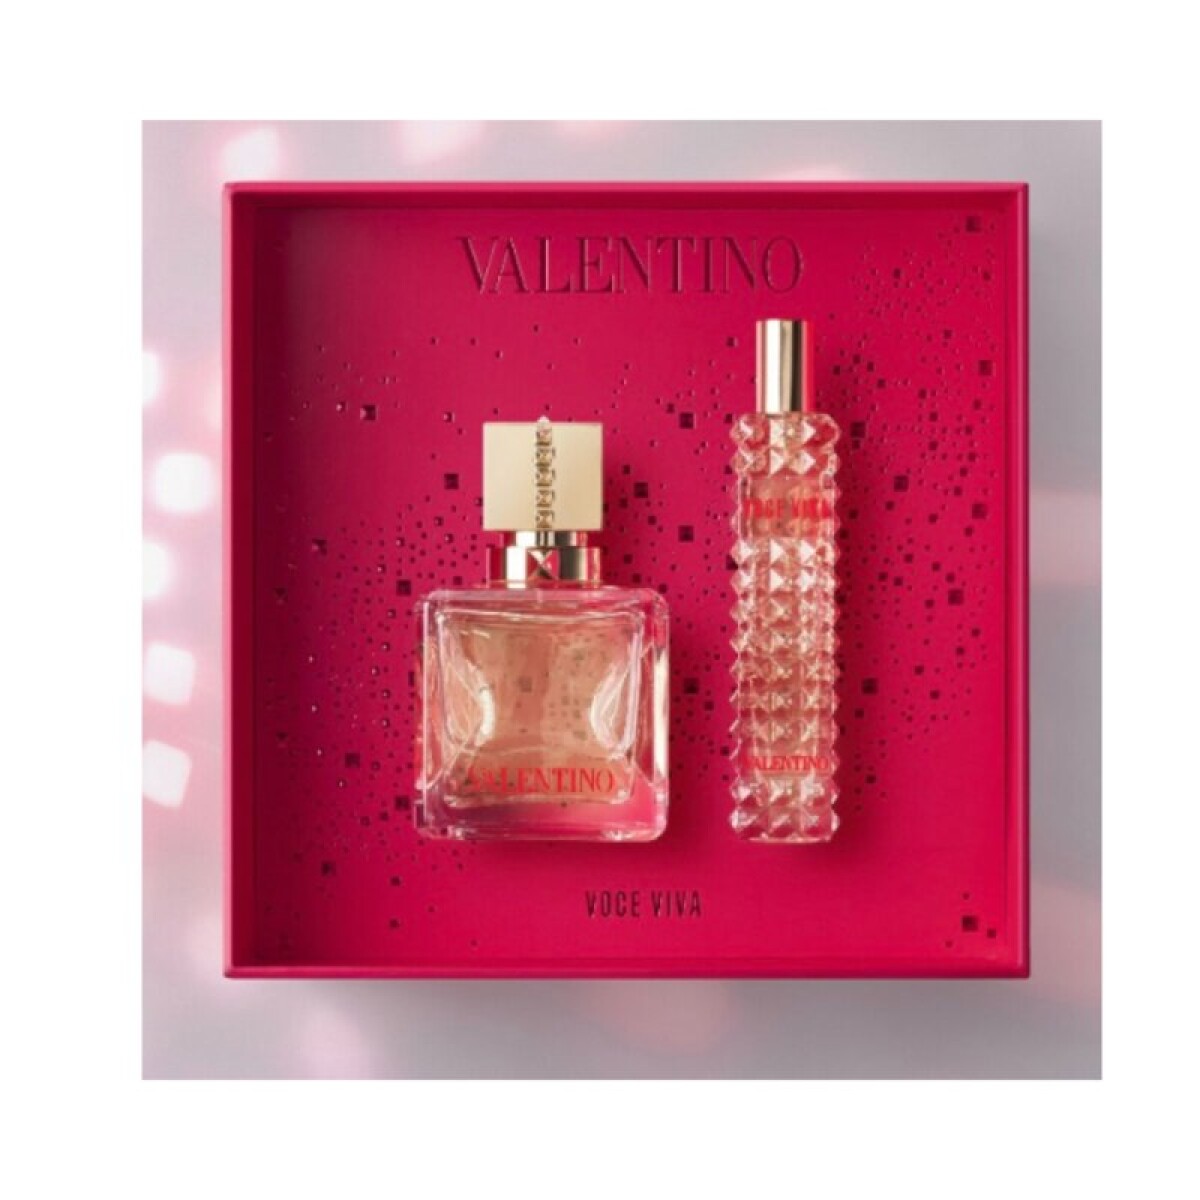 Set Perfume Voce Viva Valentino Edp 50 Ml + 15 Ml - 001 